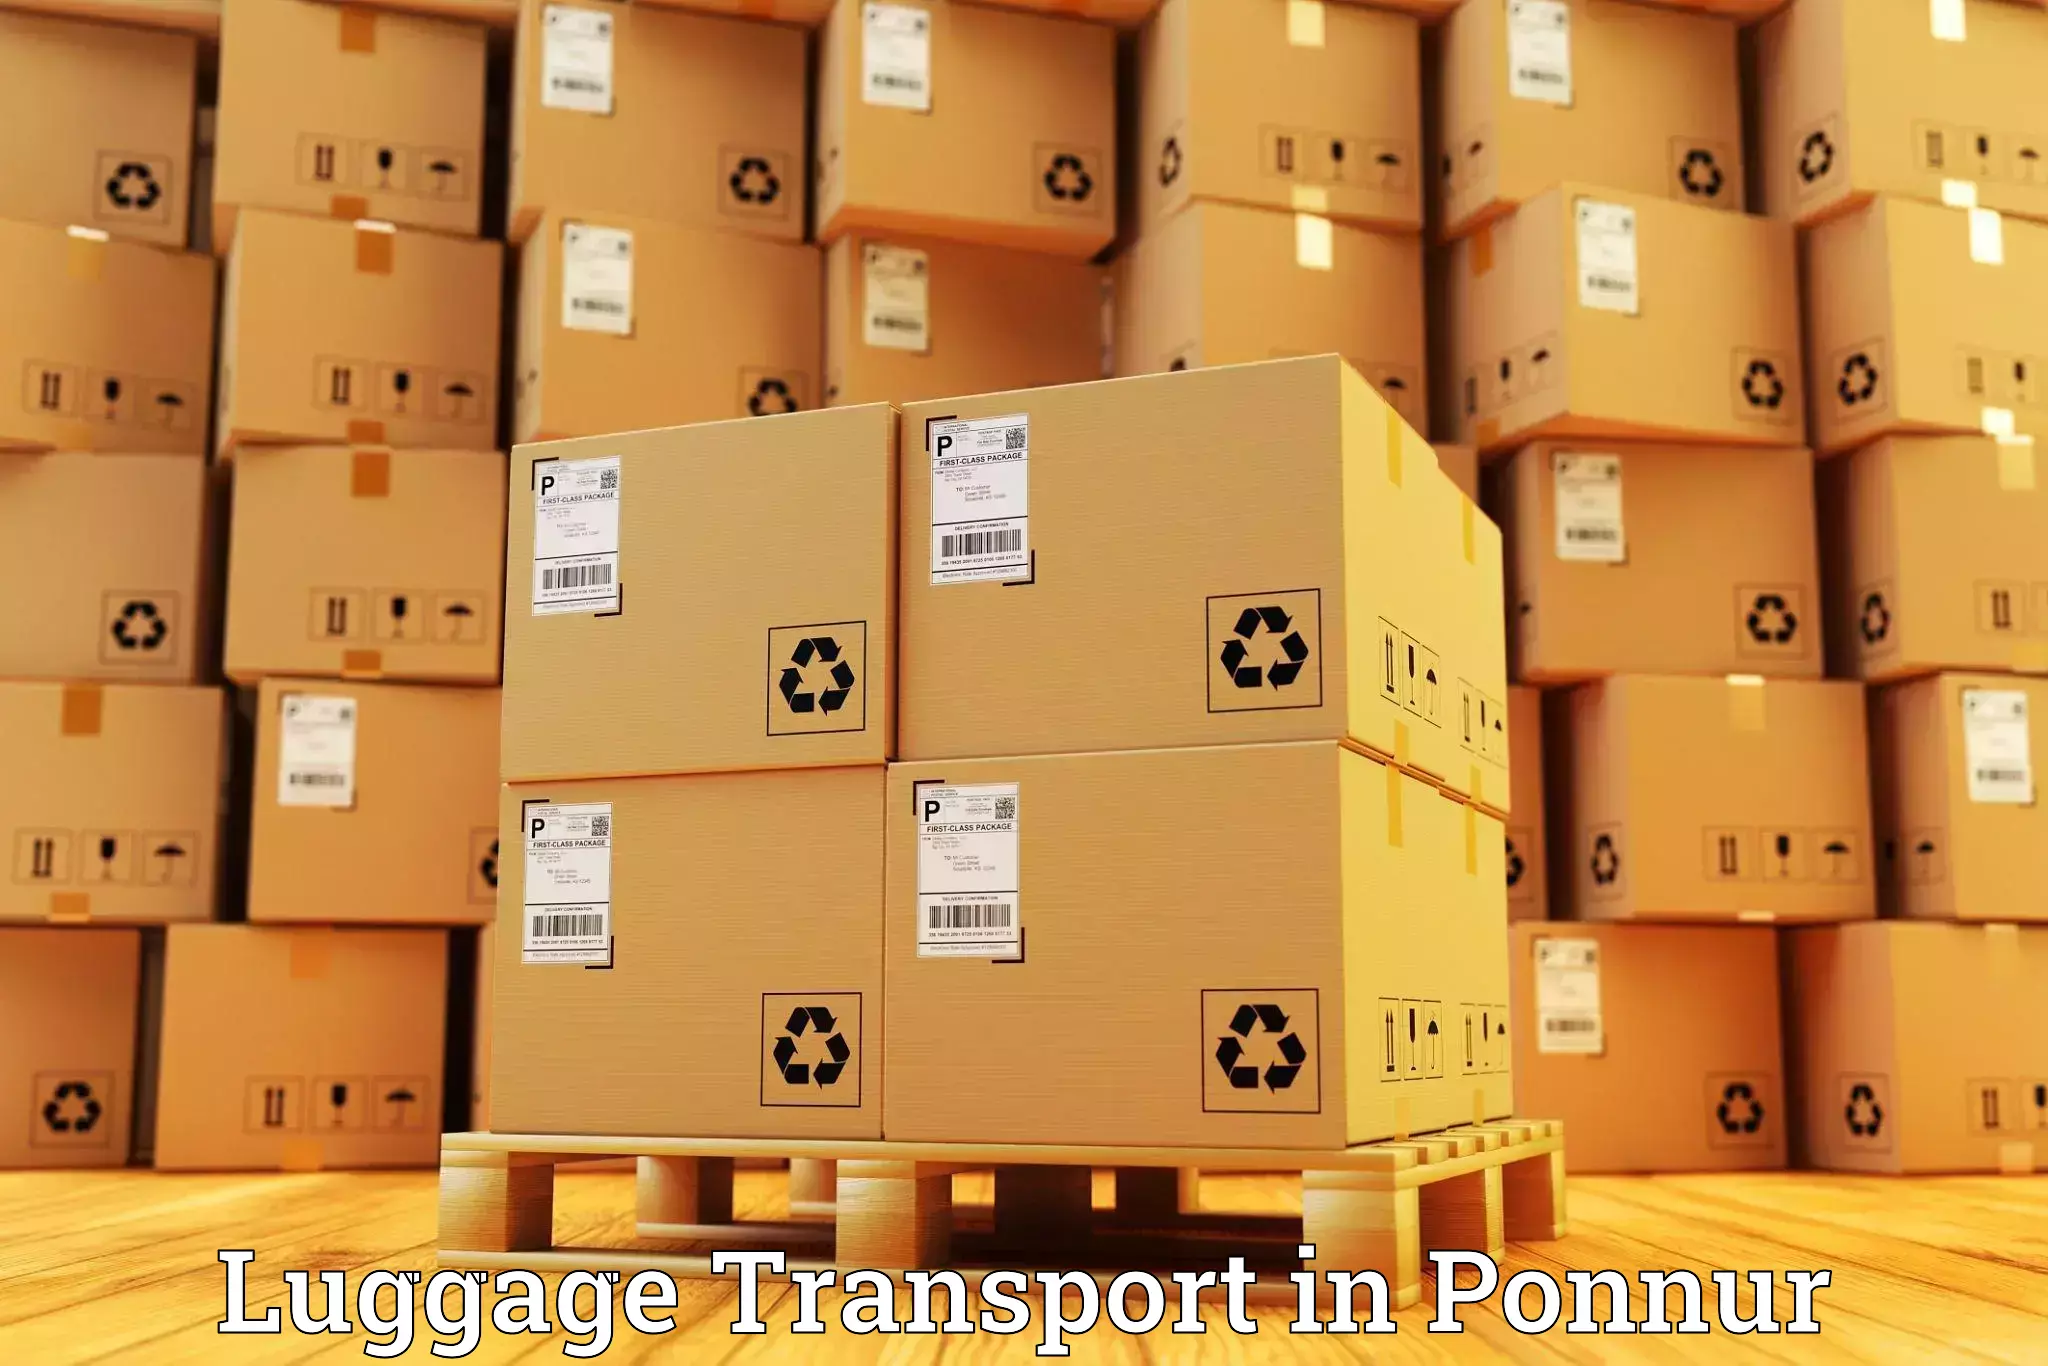 Baggage transport scheduler in Ponnur